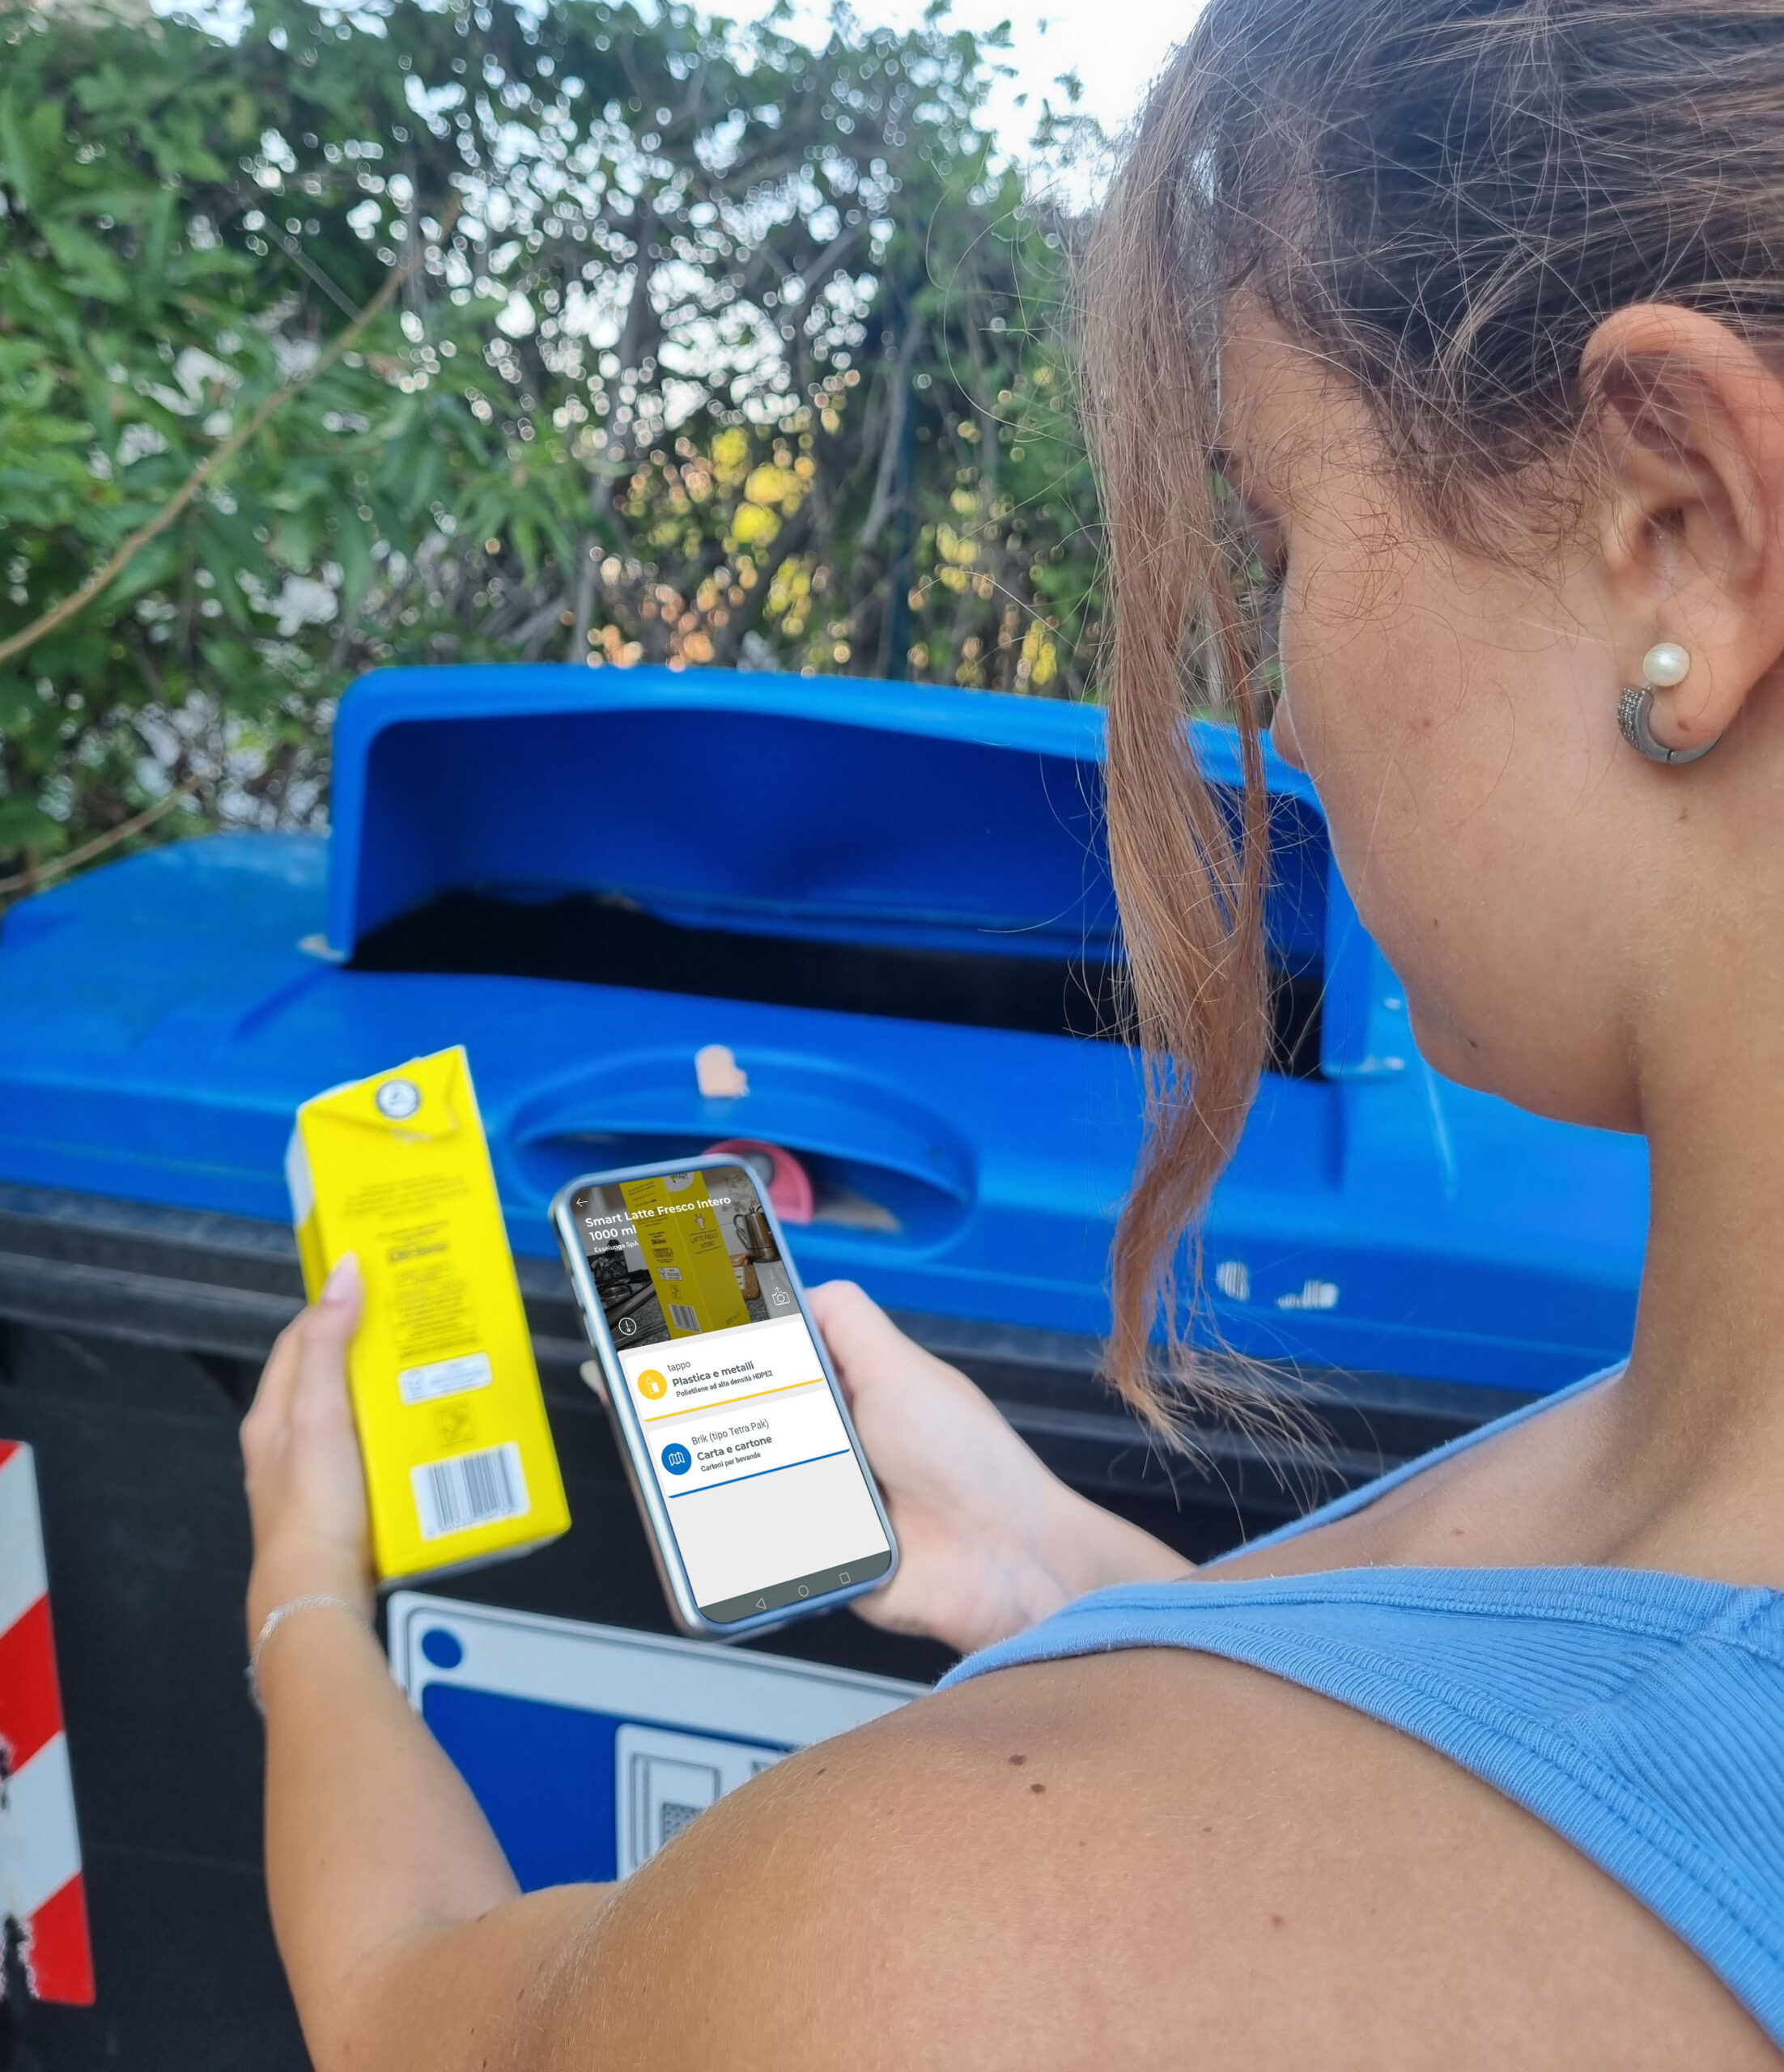 Sala Consilina, la raccolta differenziata si digitalizza: arriva Junker, l’app che riconosce i rifiuti